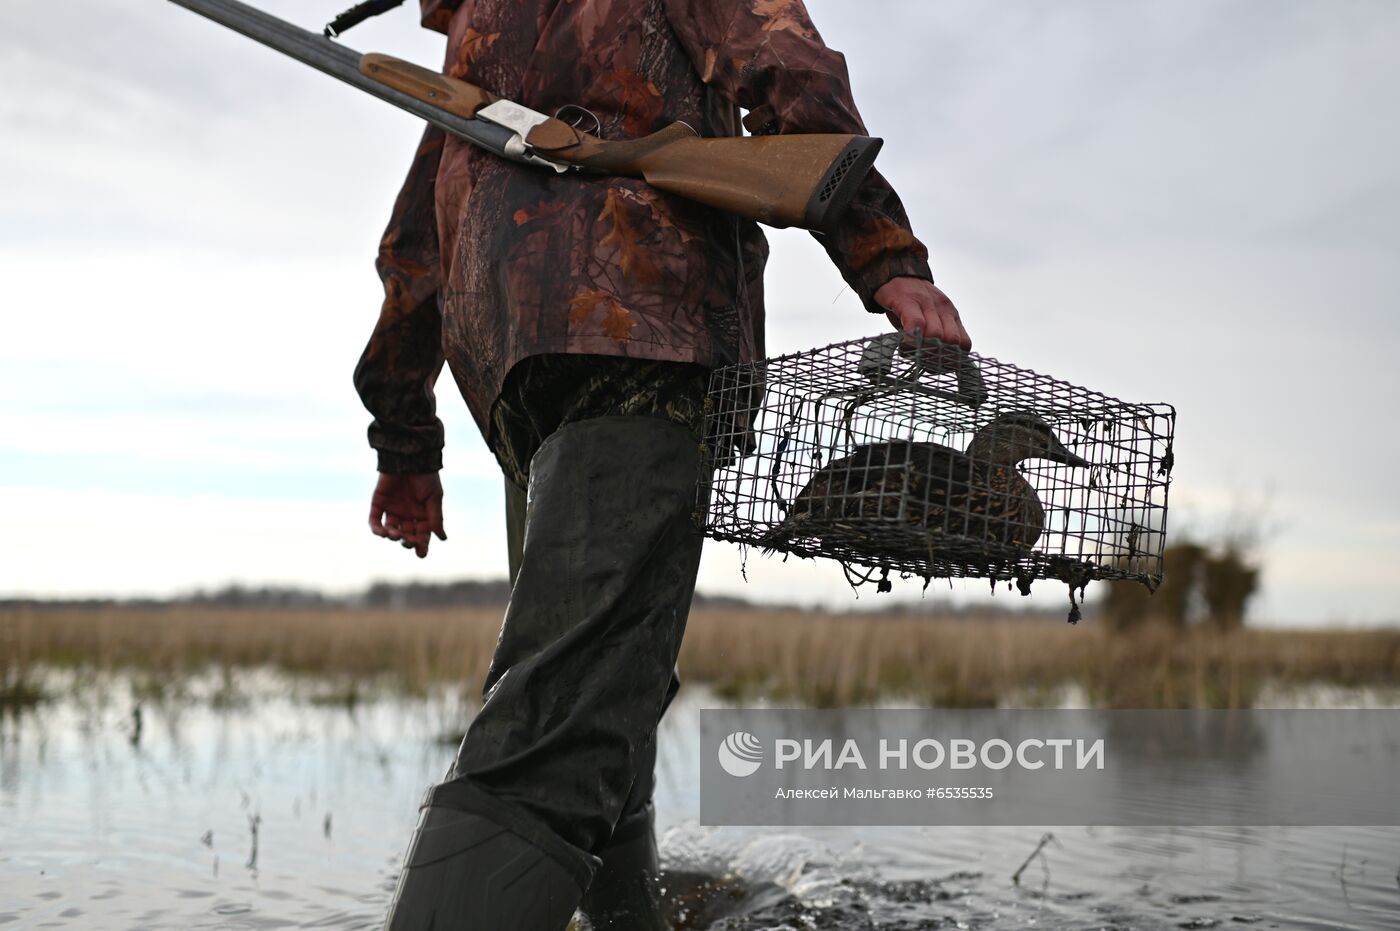 Работа егеря в сезон весенней охоты в Омской области